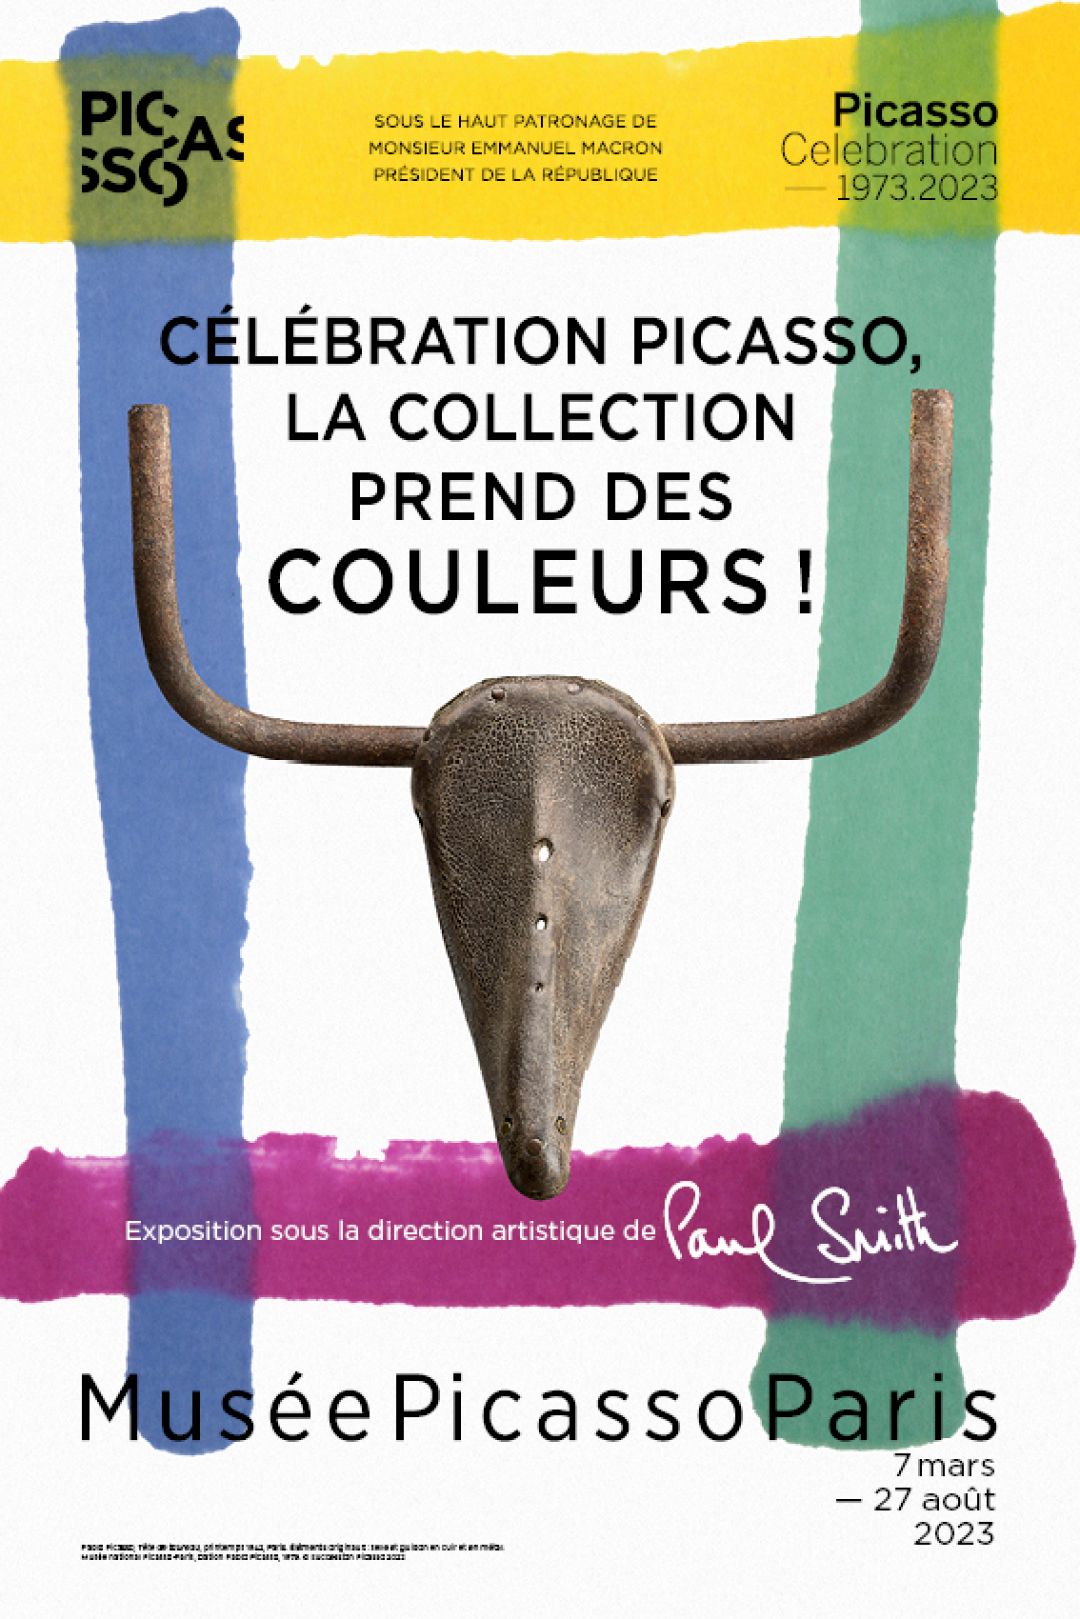 ピカソの没後50年。「ポール・スミス」がパリ国立ピカソ美術館と共同